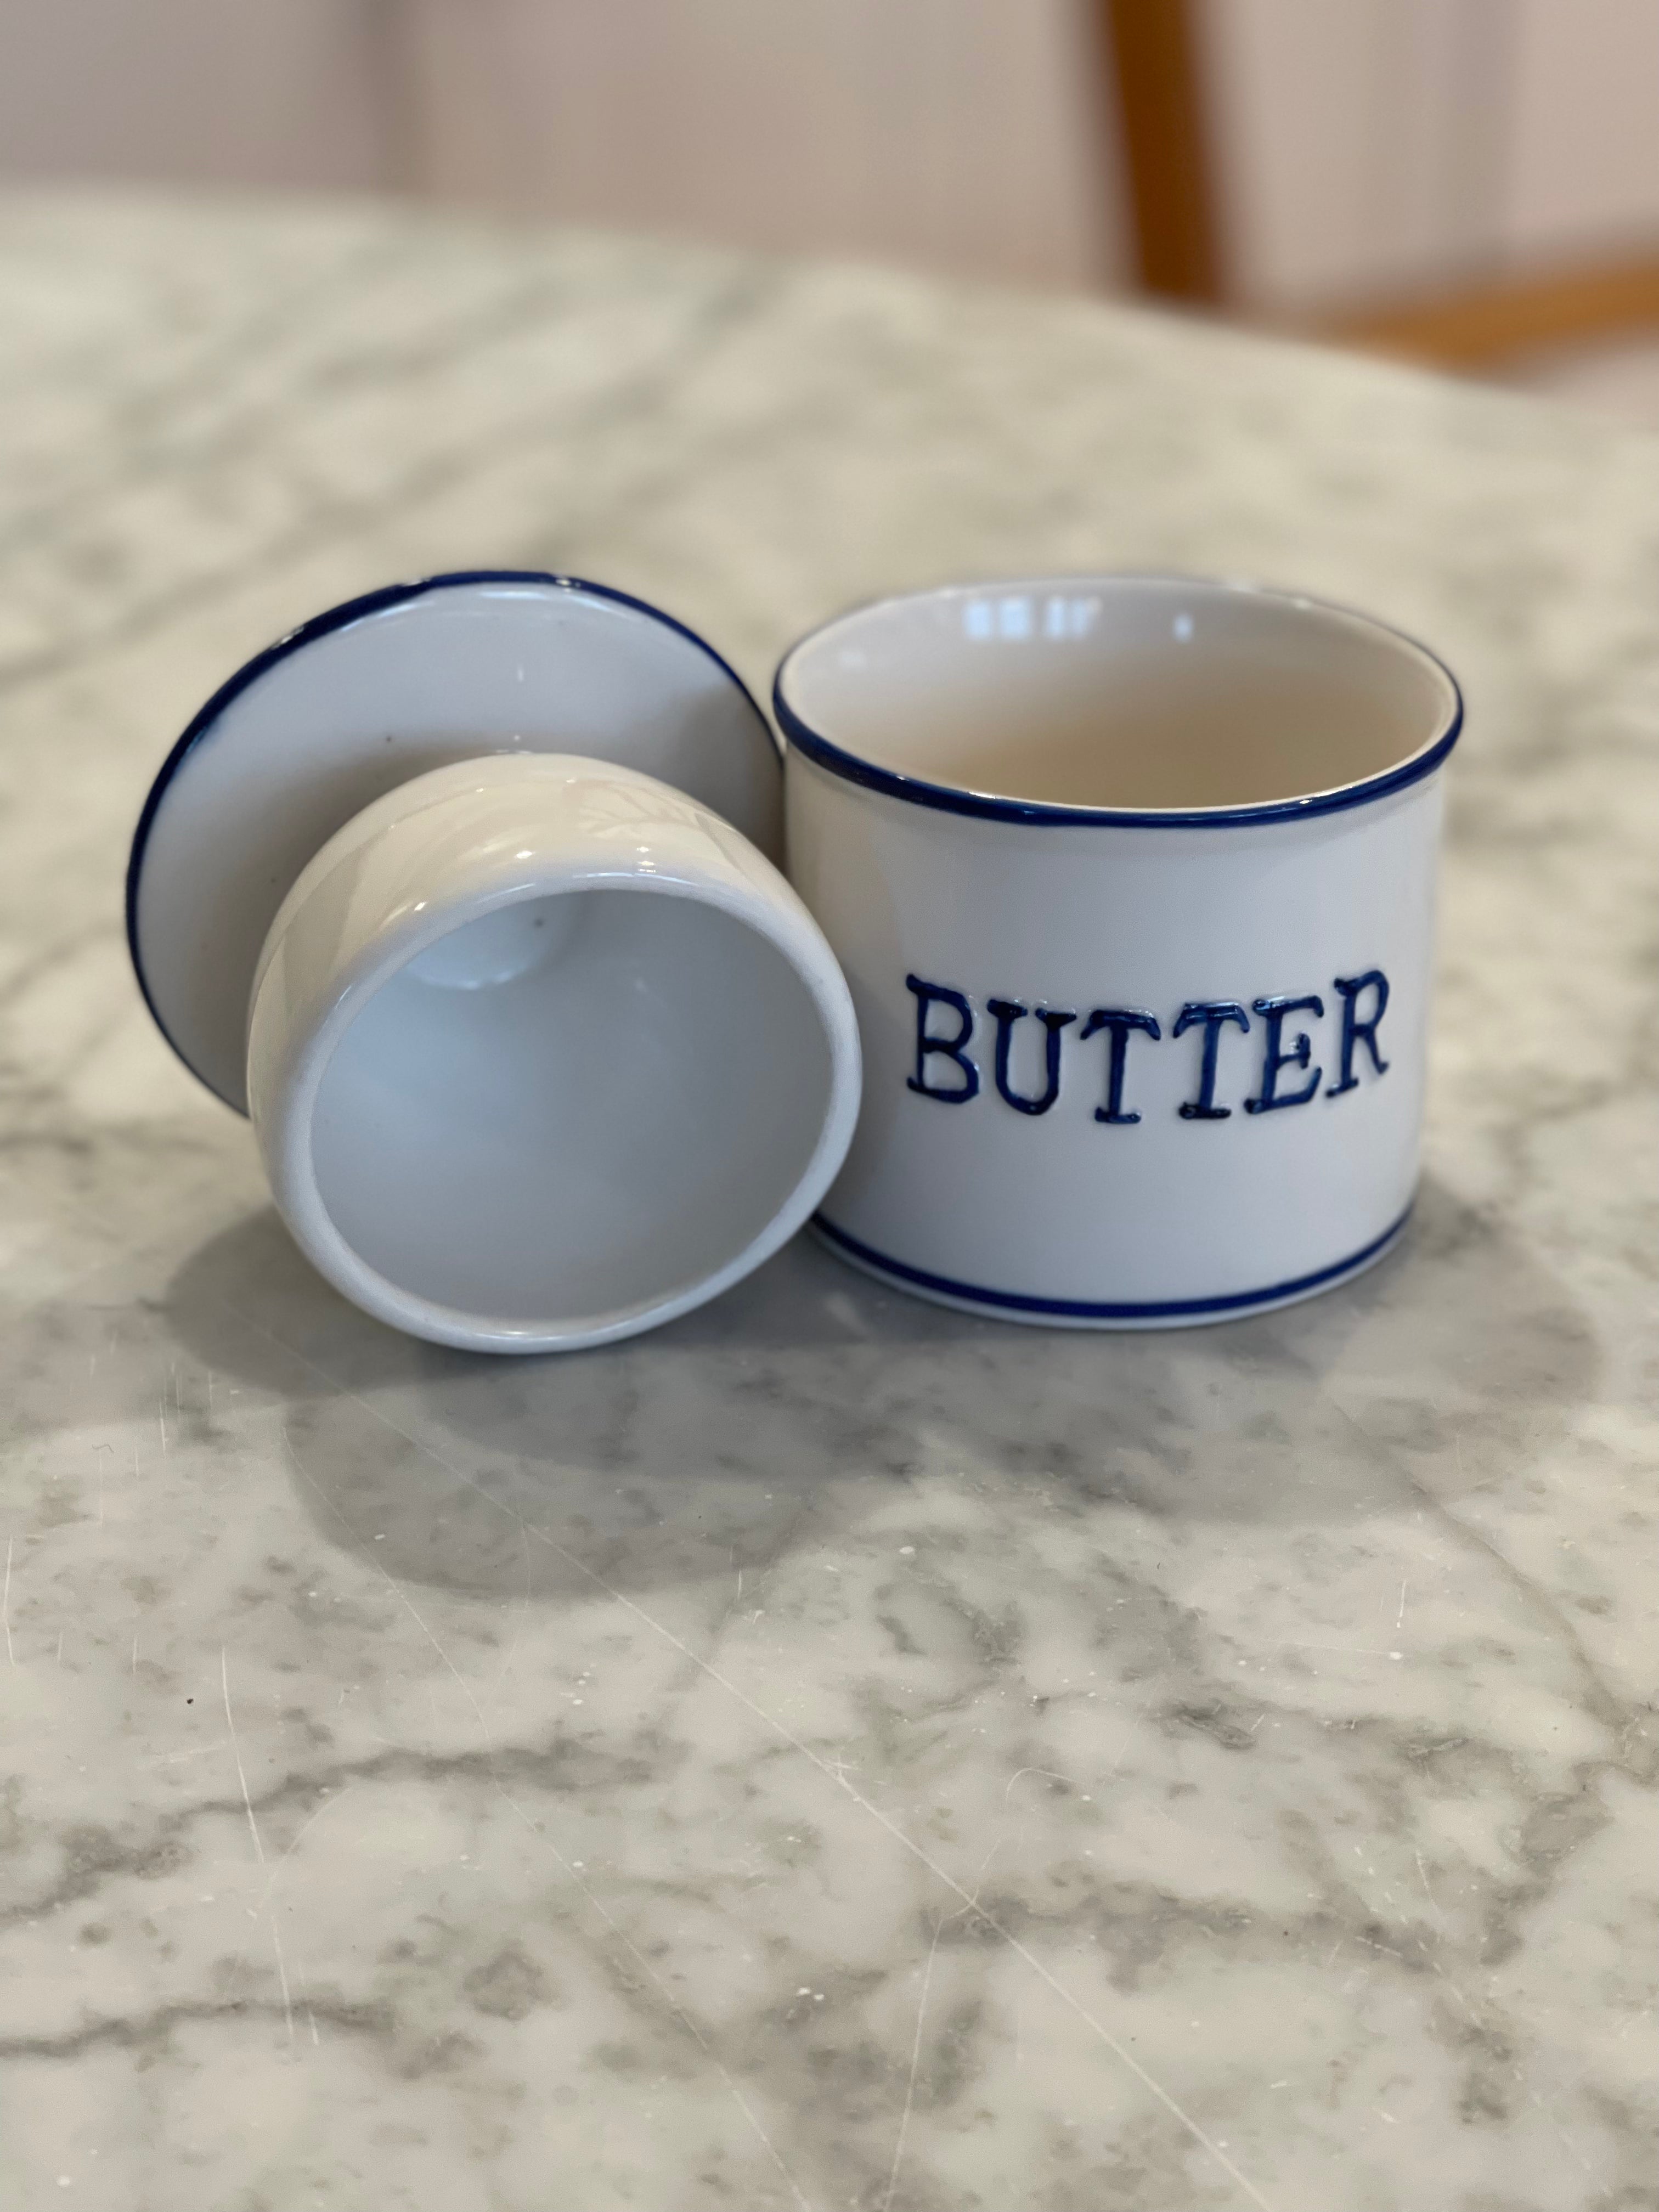 Butter Keeper